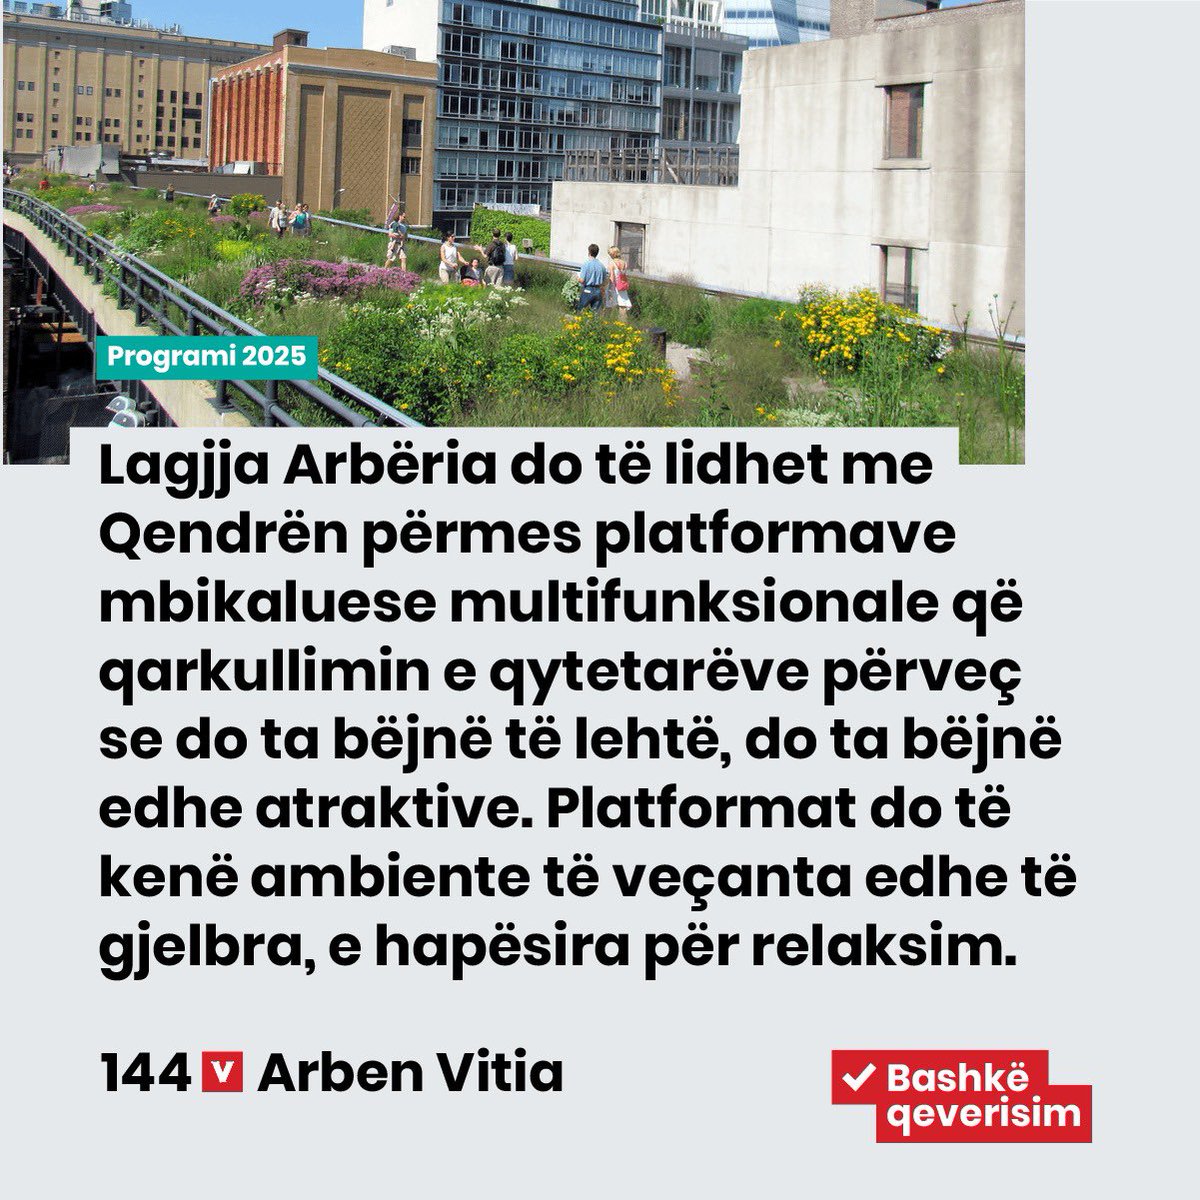 Investimet kapitale në infrastrukturë do ta lehtësojnë qarkullimin e qytetarëve dhe makinave. Le të ecim Prishtinës, e të punojmë që lagjet e rrugët e kryeqytetit tonë të jenë më të sigurta për të gjithë.